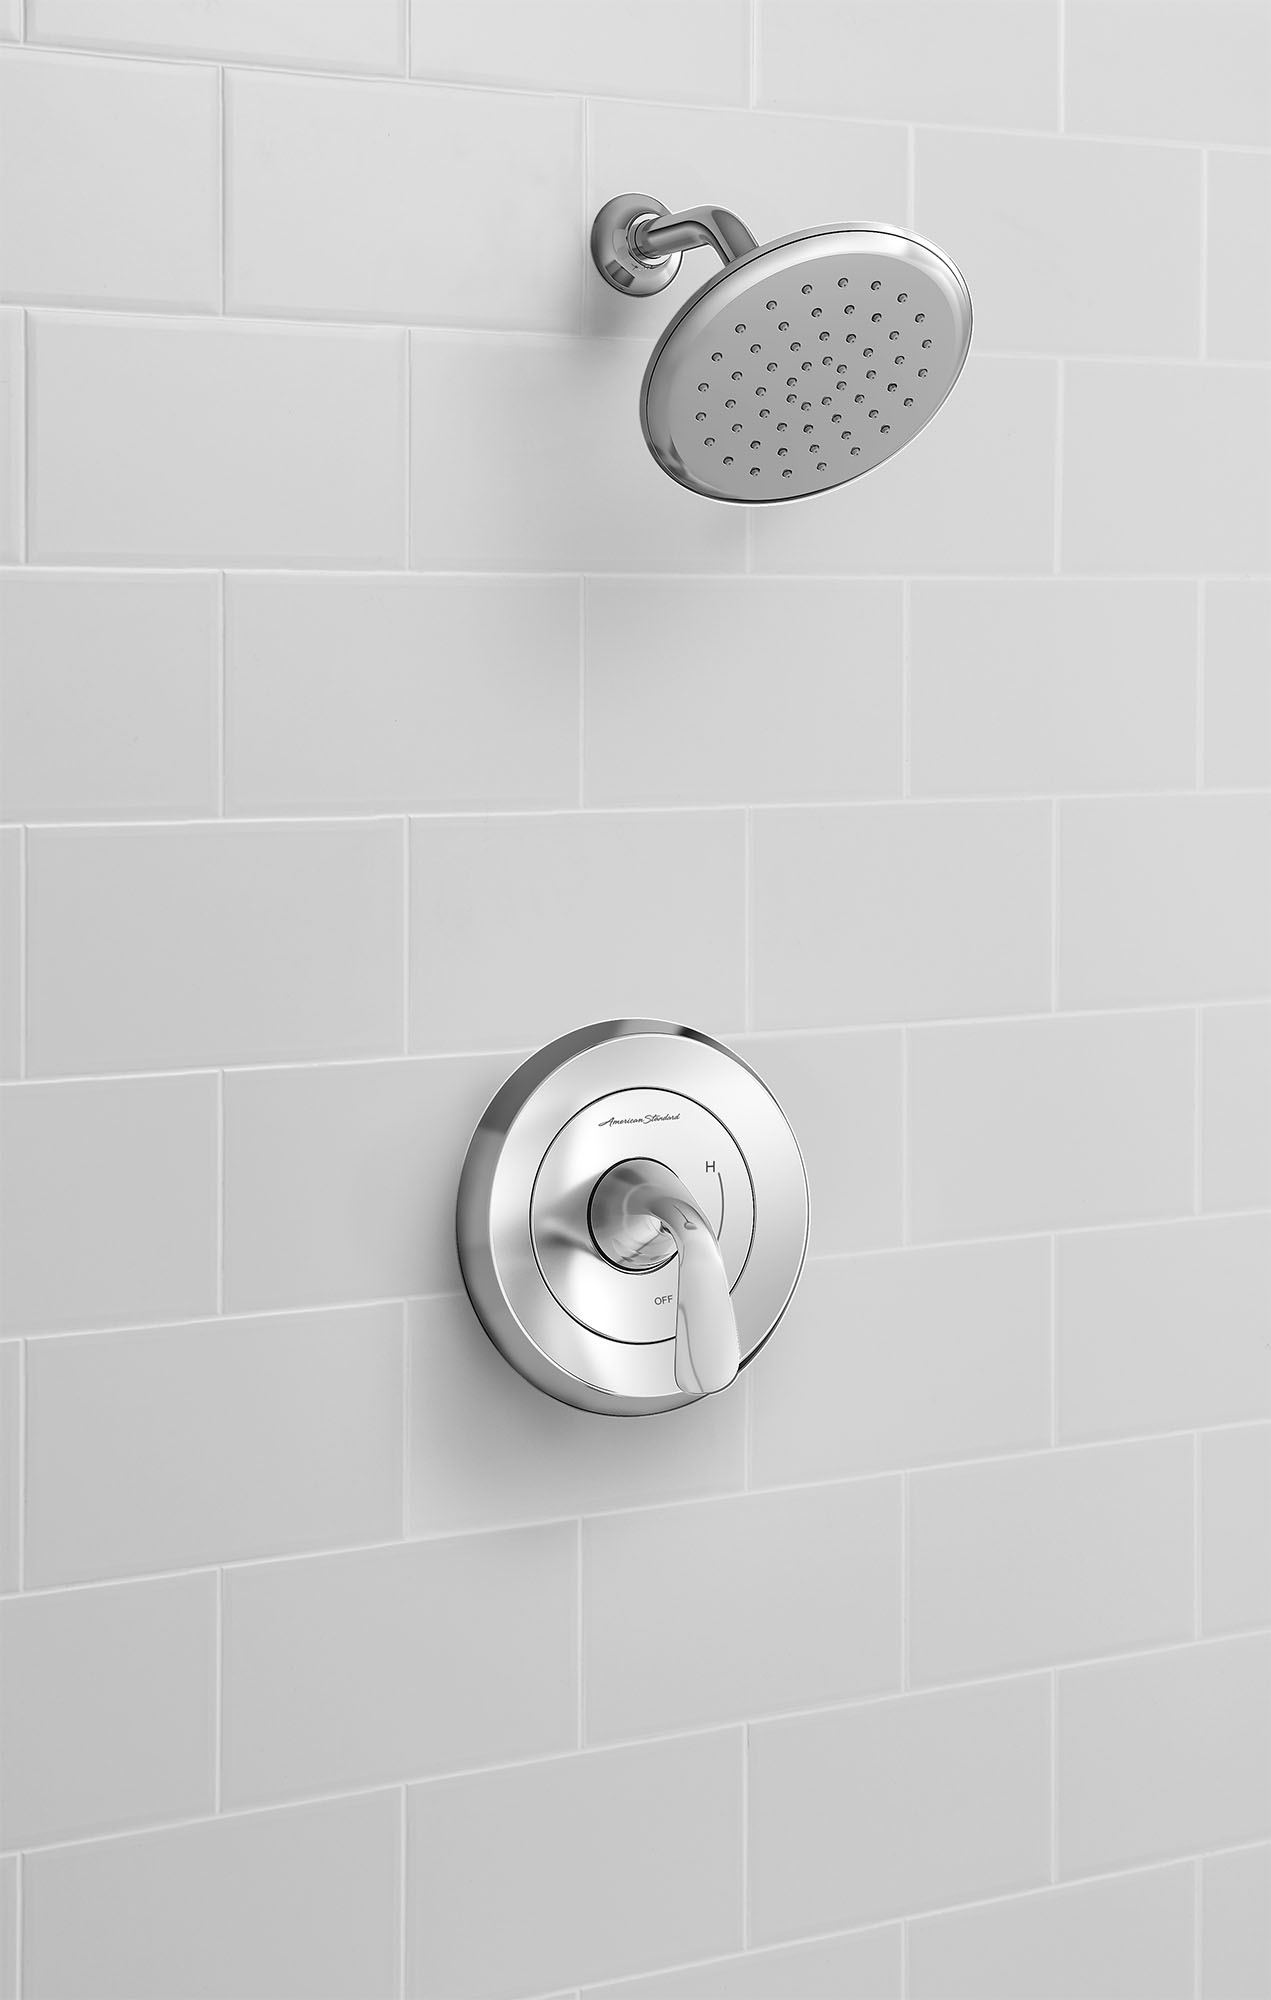 FluentMC - Ensemble de robinetterie pour douche 1,8 gpm/6,8 L/min incluant une pomme de douche à économie d'eau, une cartouche à pression équilibrée en double céramique et une poignée à levier